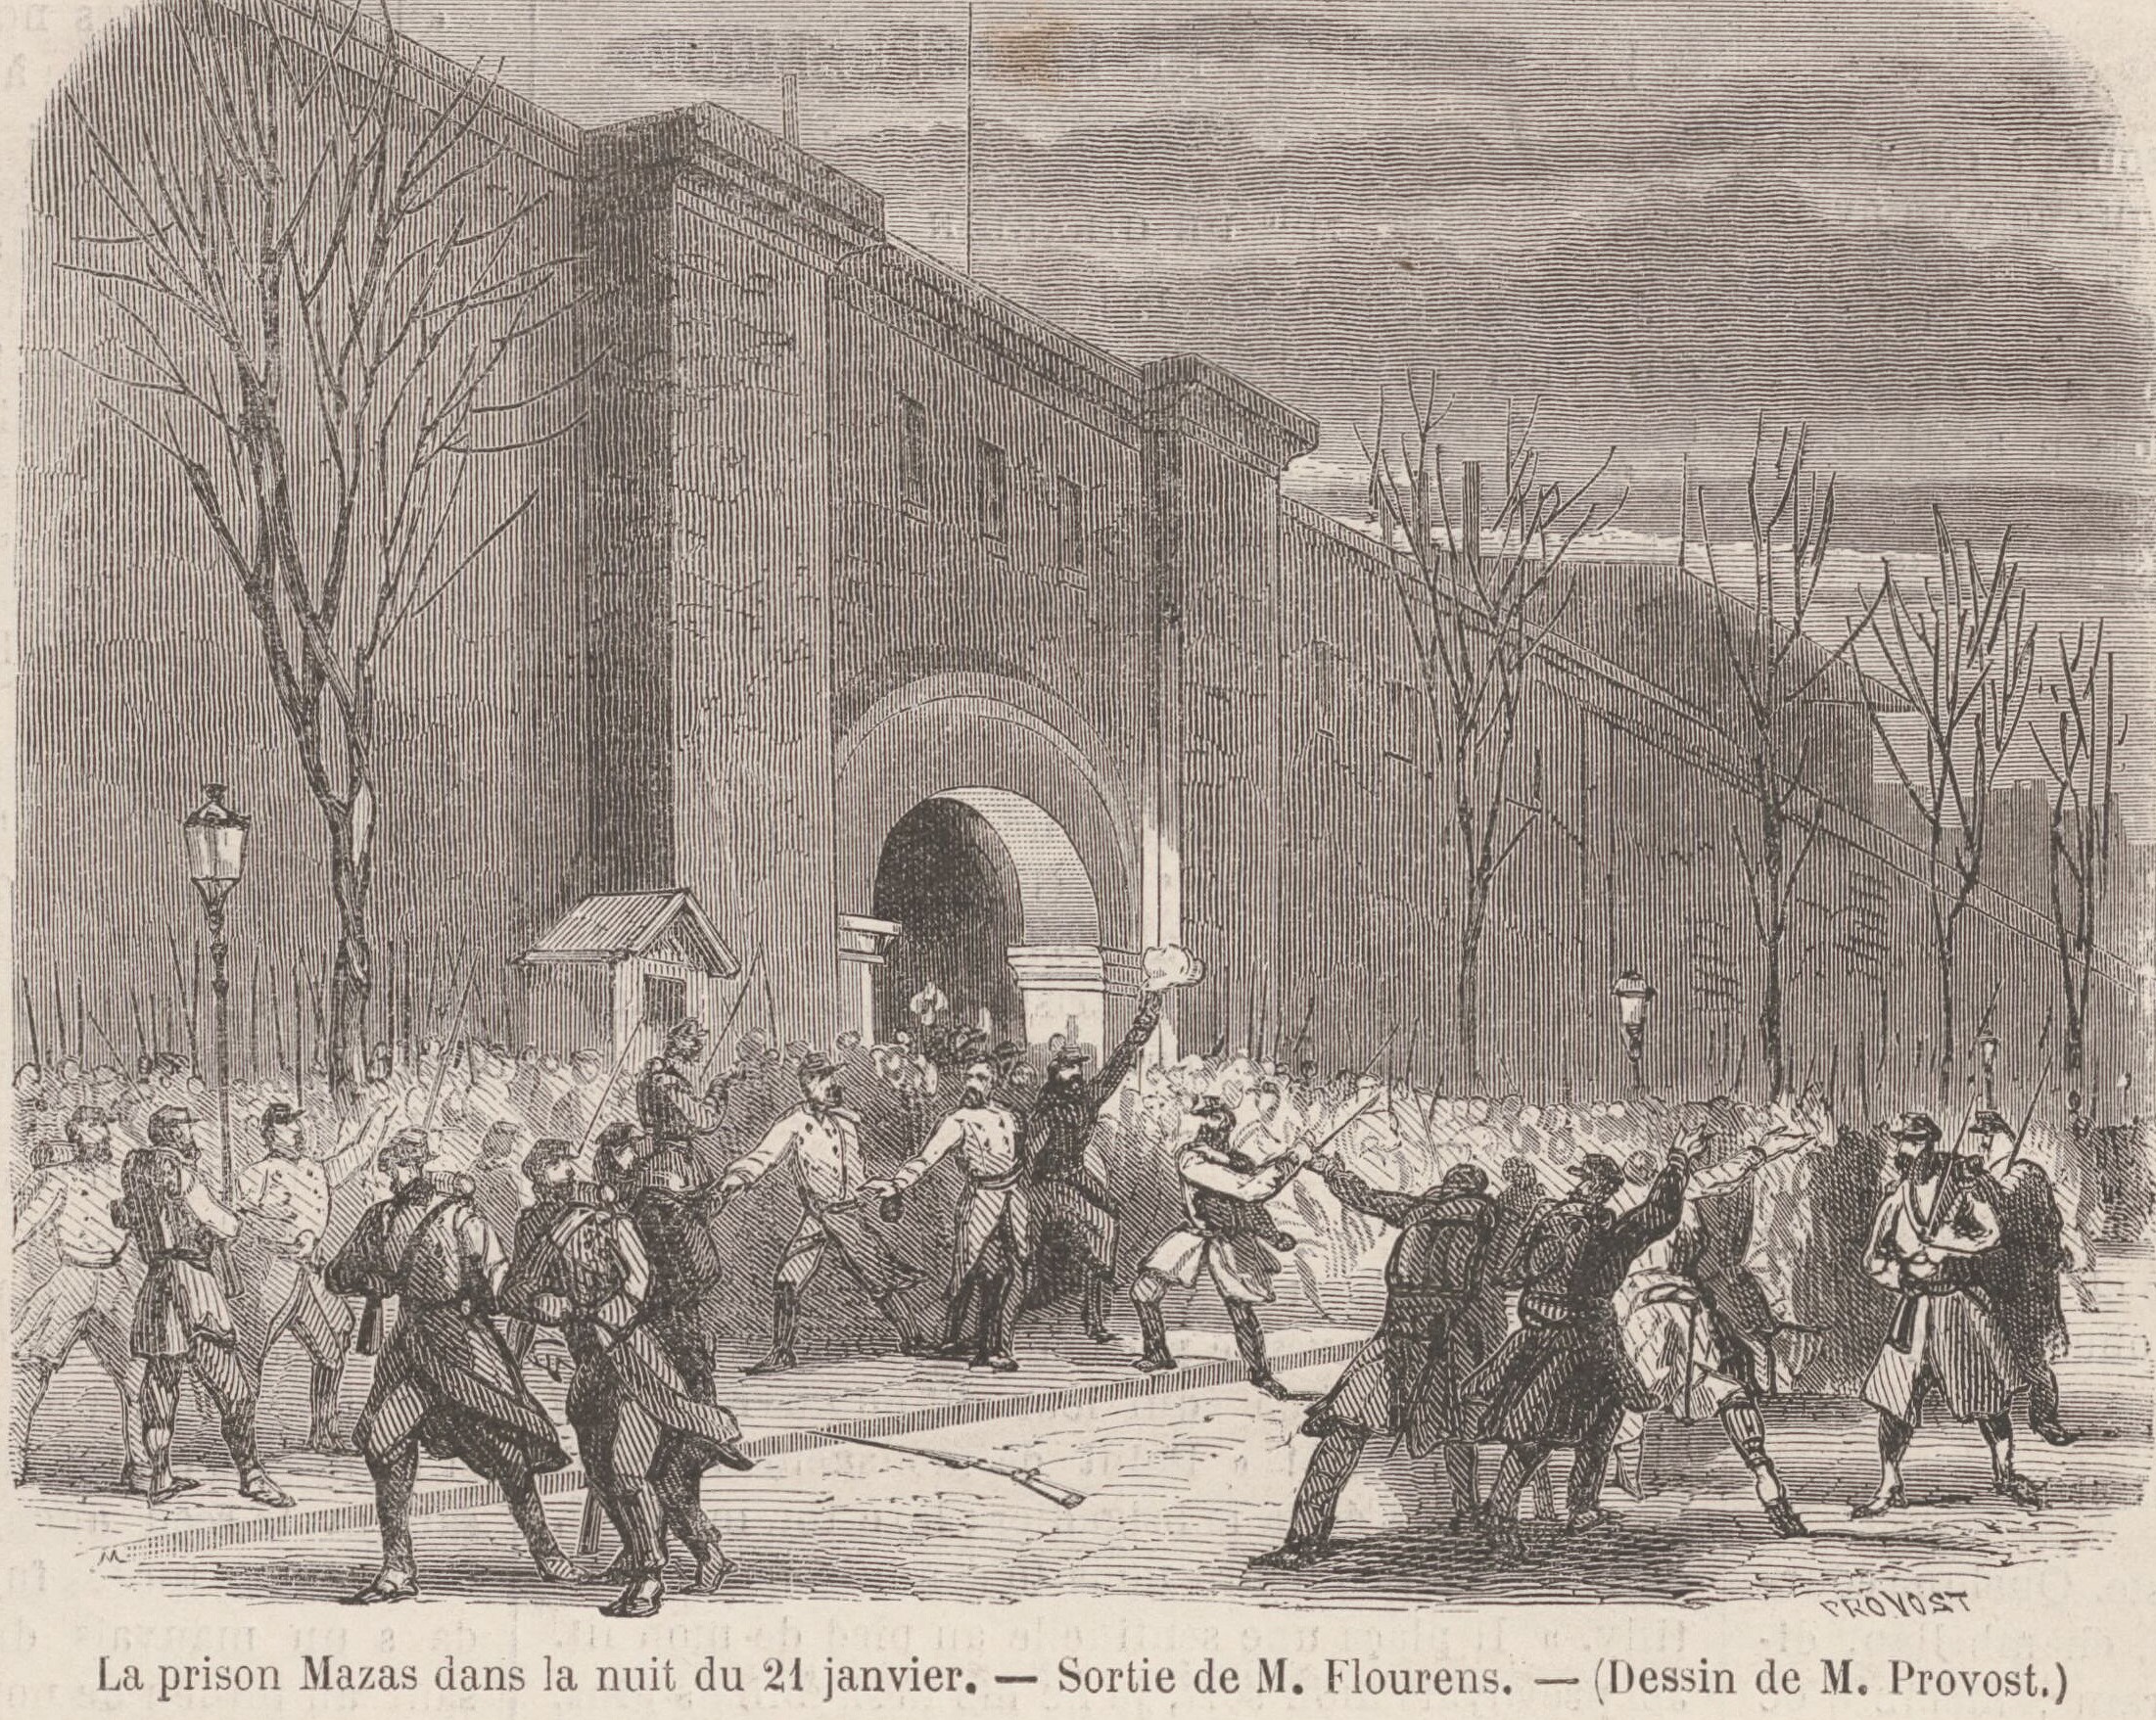 21 janvier 1871 - Sortie de Flourens de la prison Mazas (Le Monde Illustré du 28 janvier 1871)